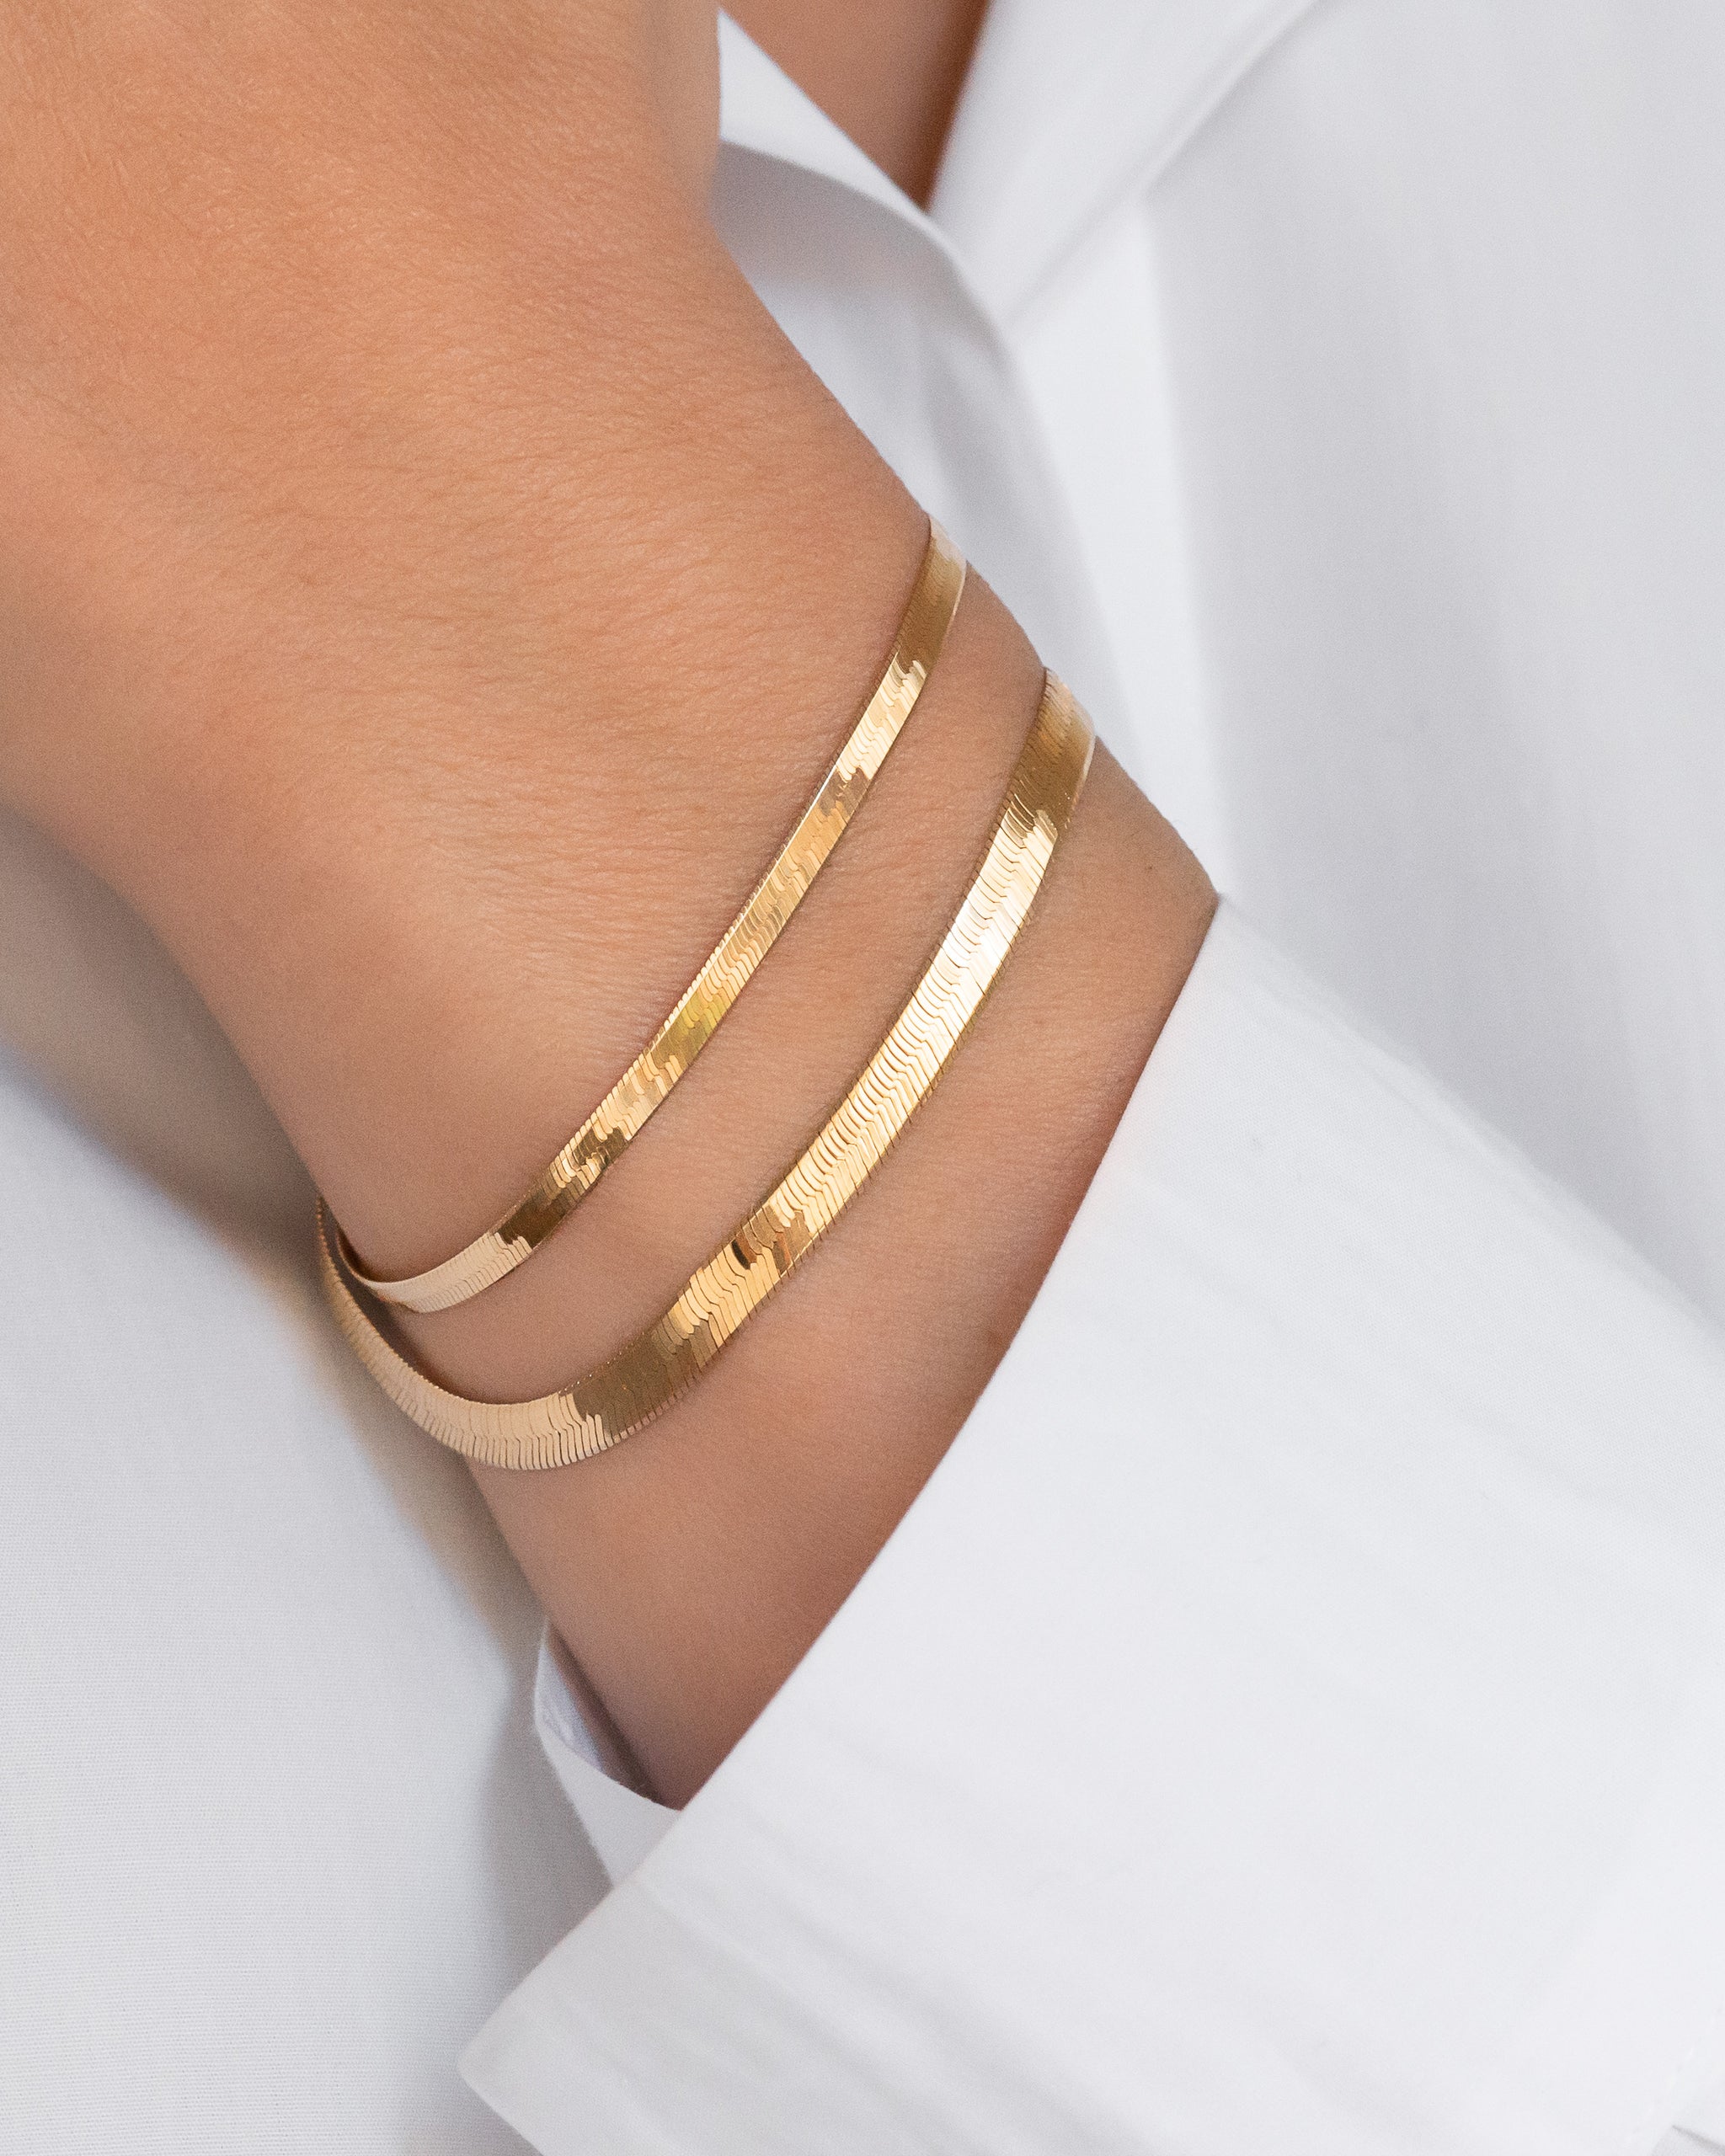 Buy Solid 14K, 18K Gold Bracelets for Women, Real Gold Bead Thin Chain  Bracelet Online at desertcartINDIA